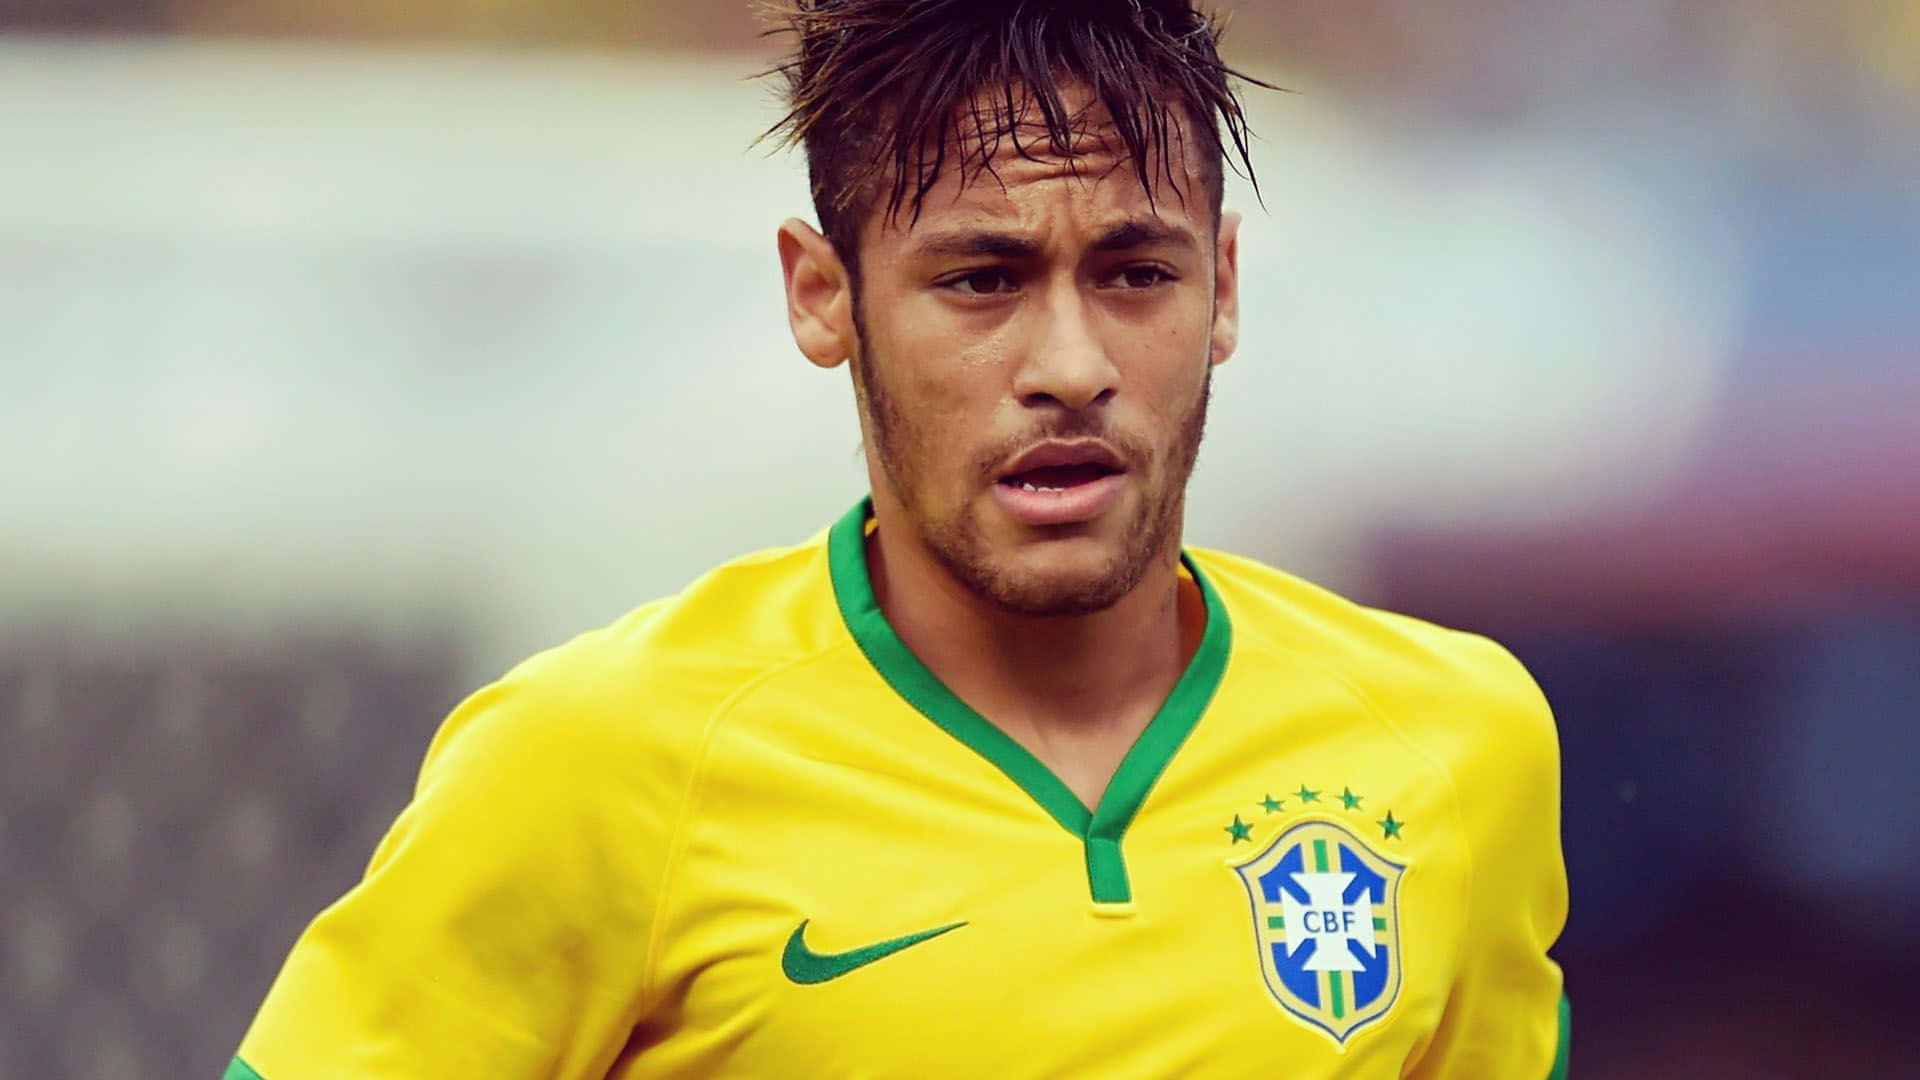 Immaginedel Calciatore Professionista Neymar In Campo.